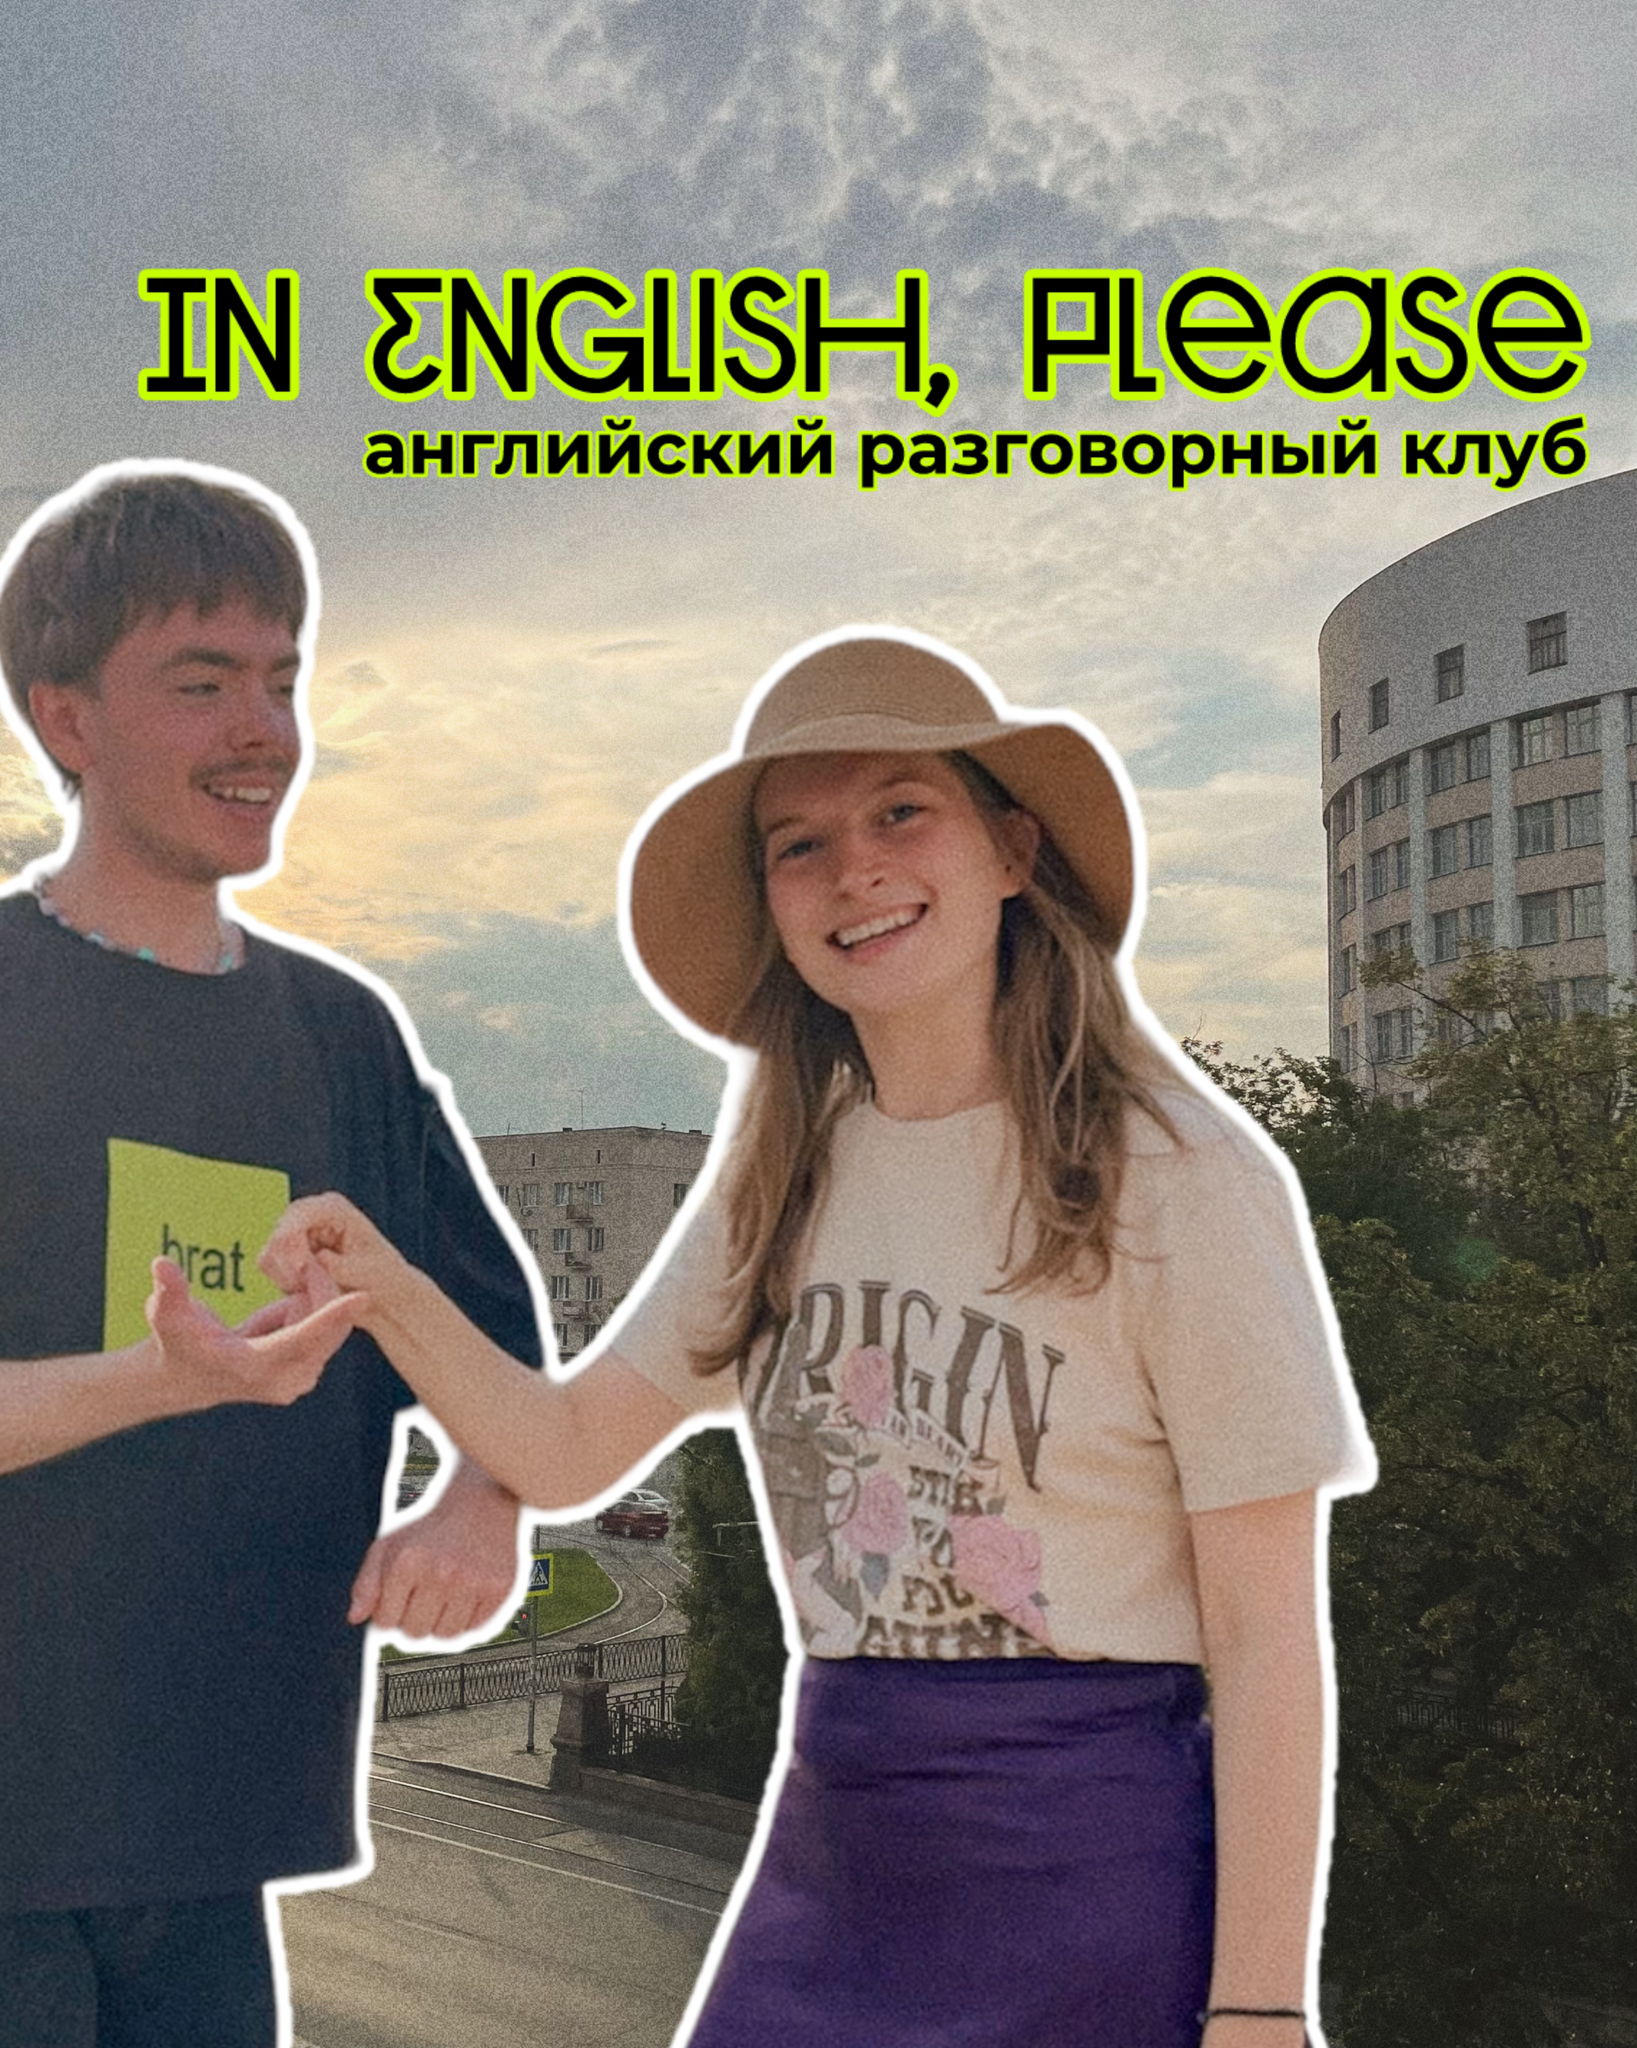 Английский разговорный клуб "In English, please"